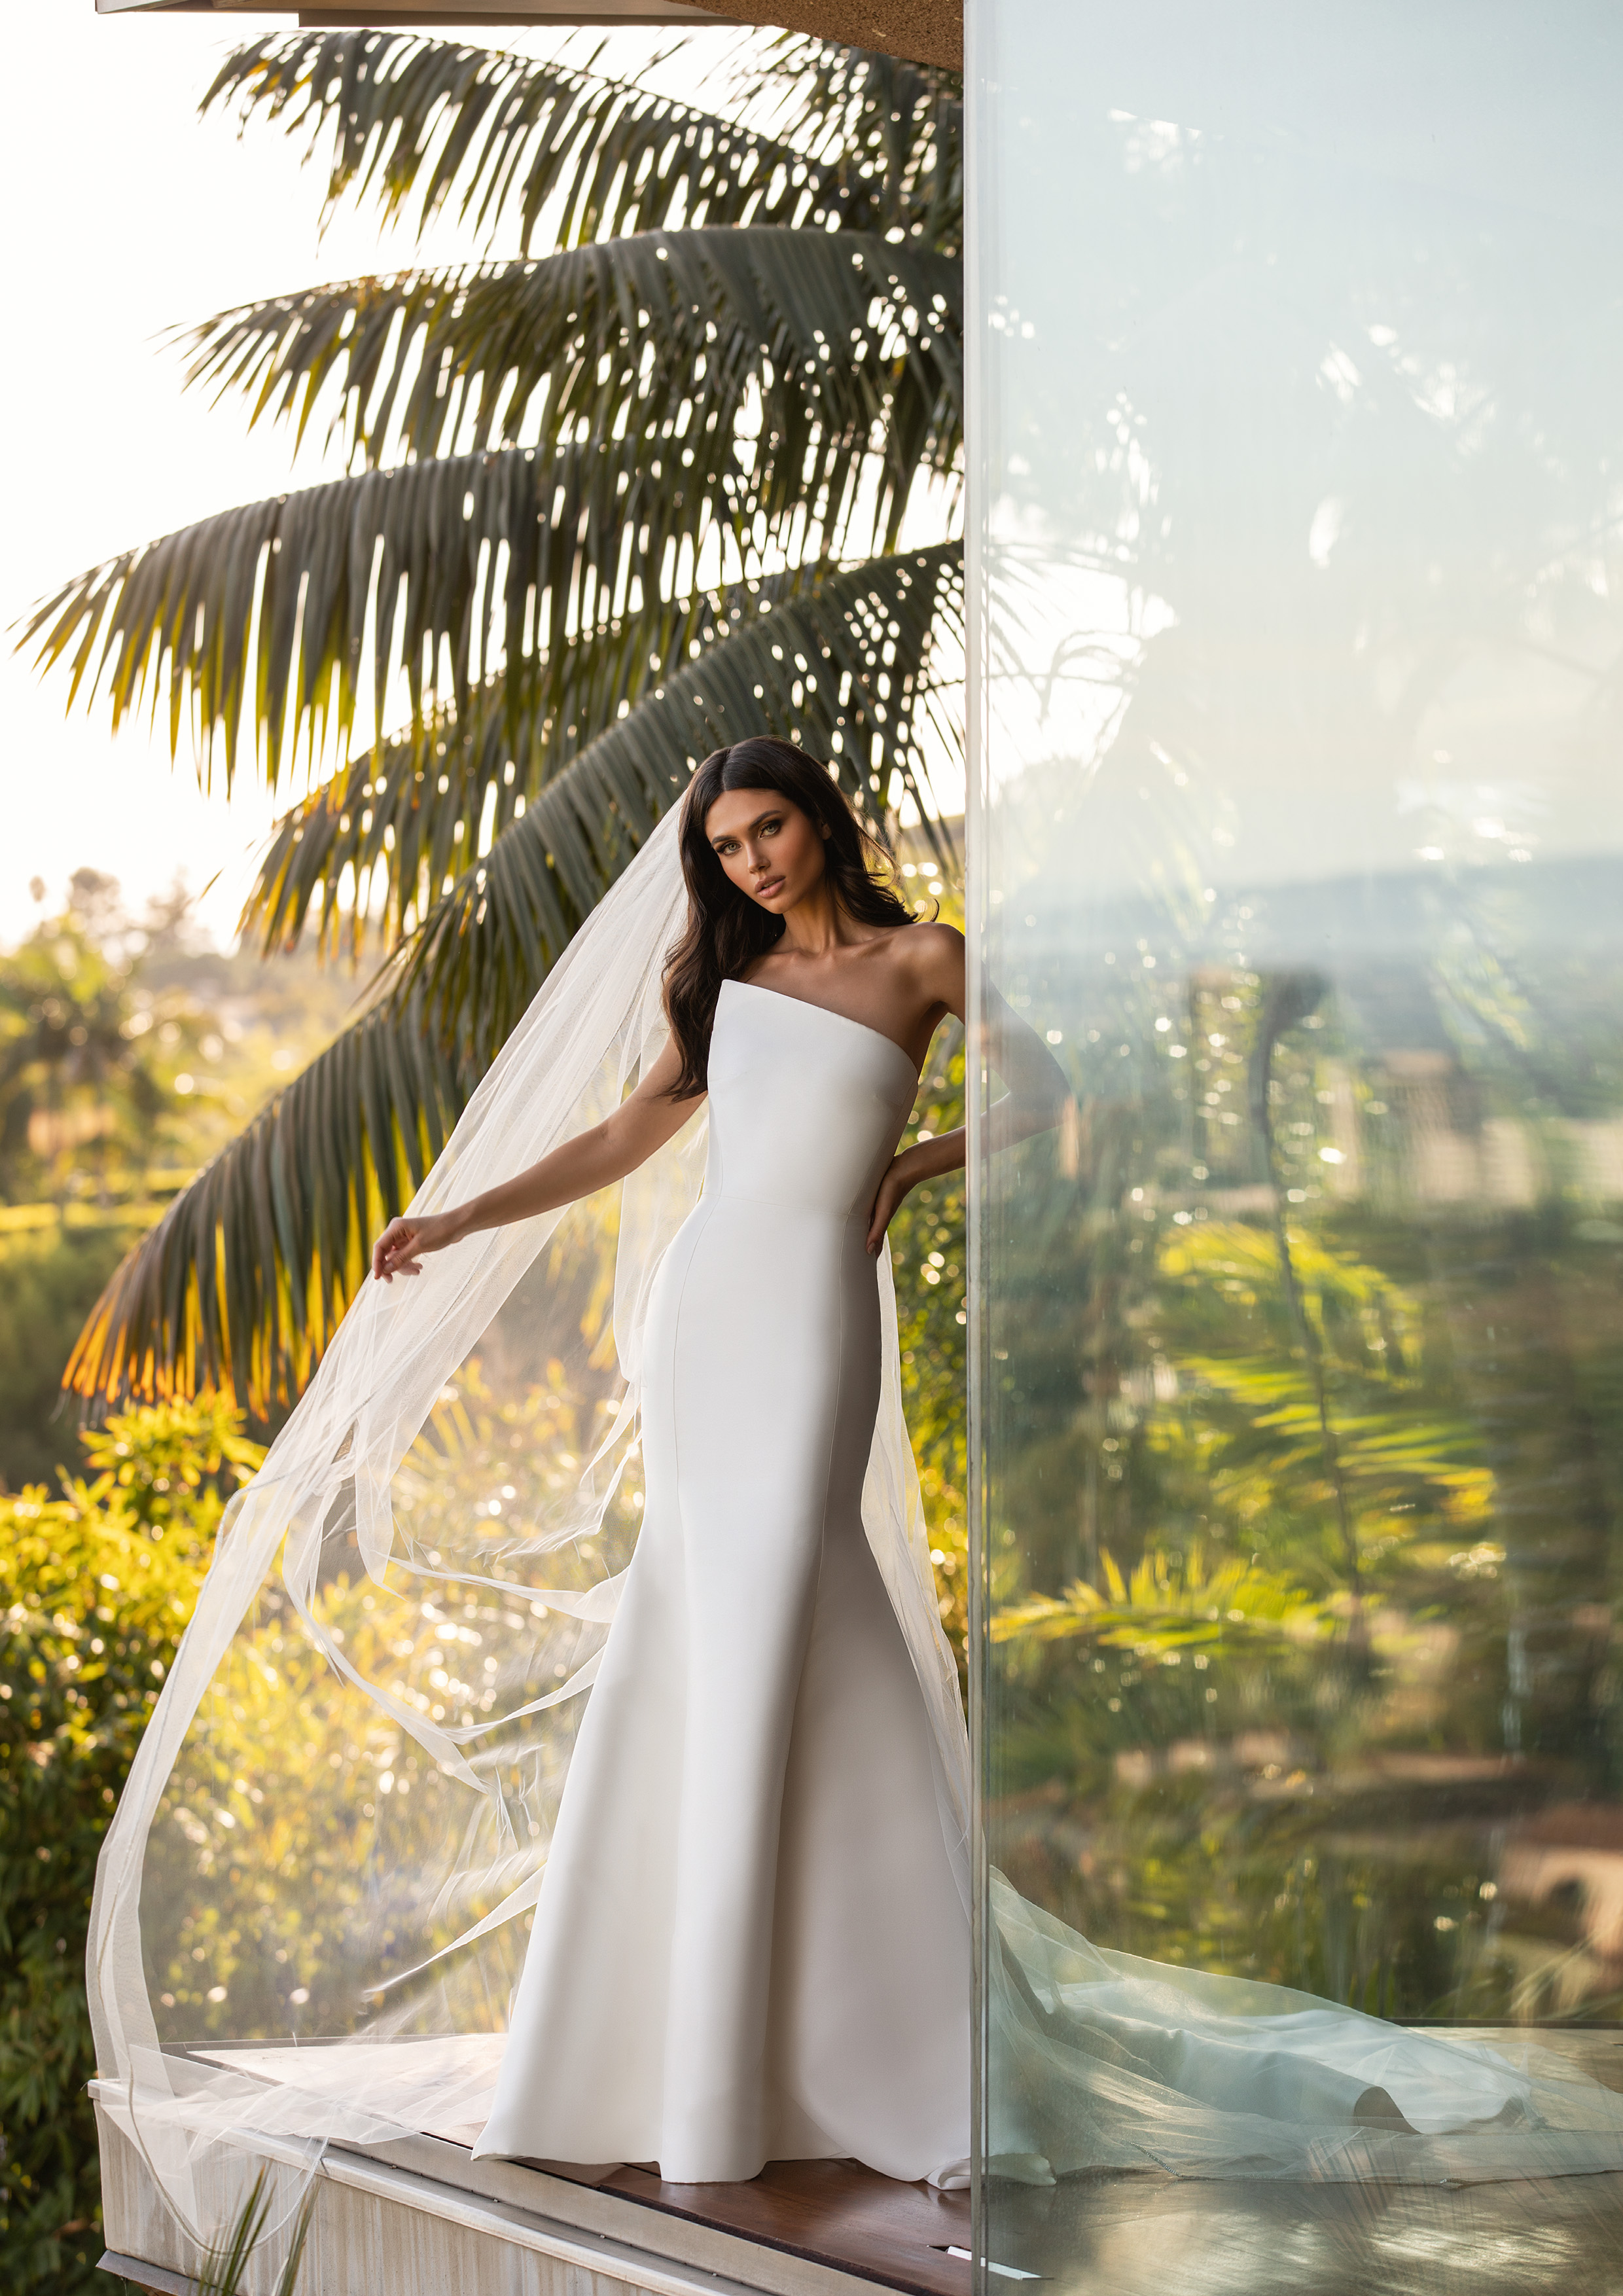 Vestido de noiva modelo Day da coleção Pronovias 2021 Cruise Collection